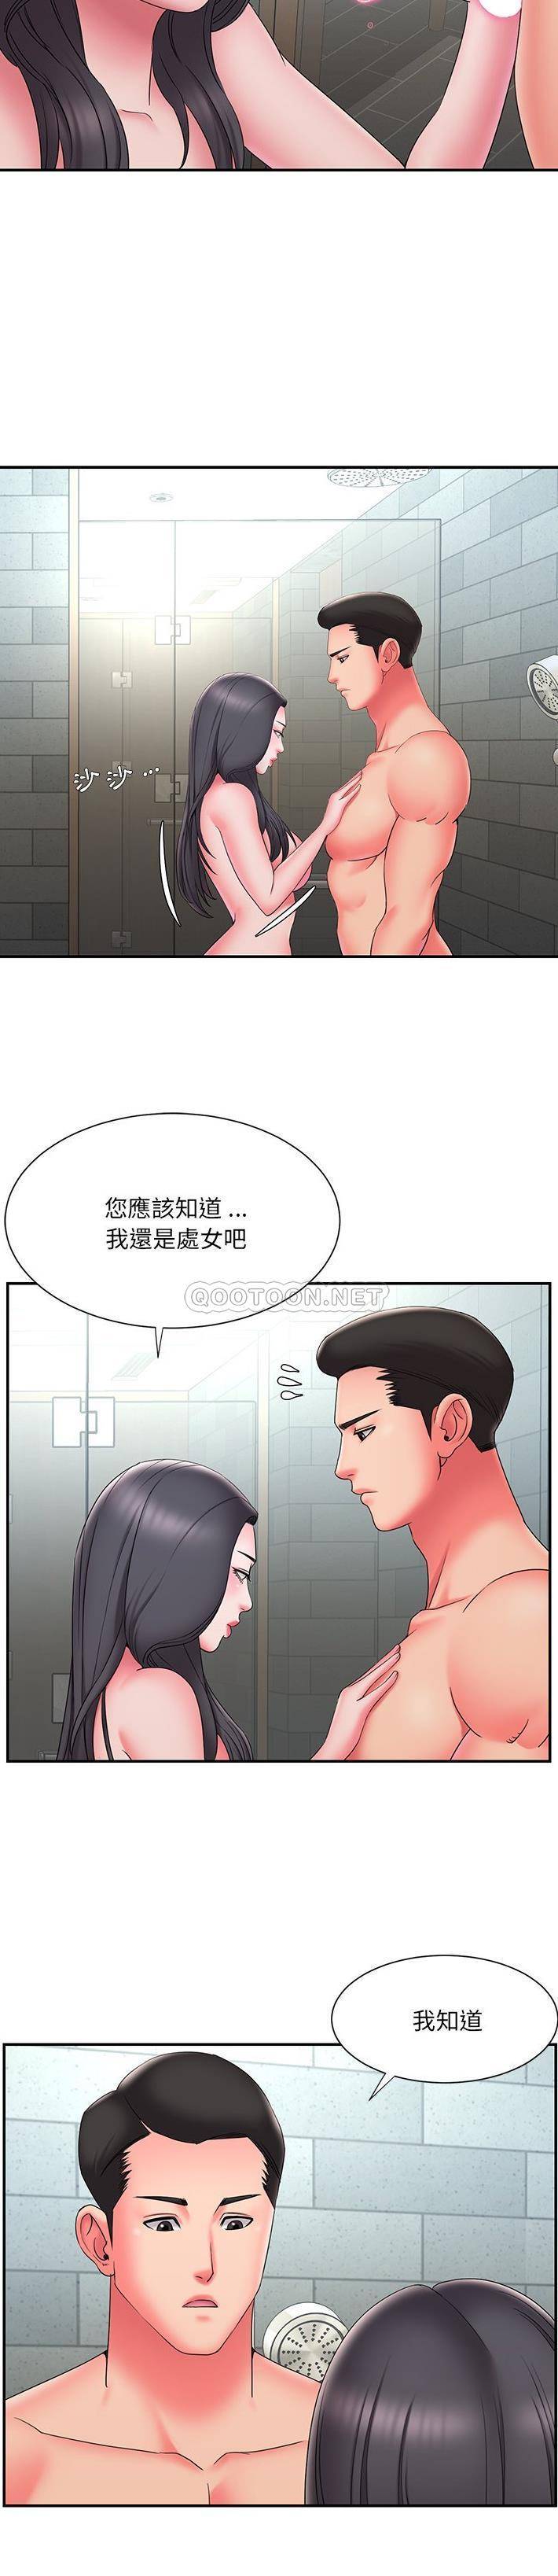 韩国污漫画 被拋棄的男人(男孩沒人愛) 第24话 7